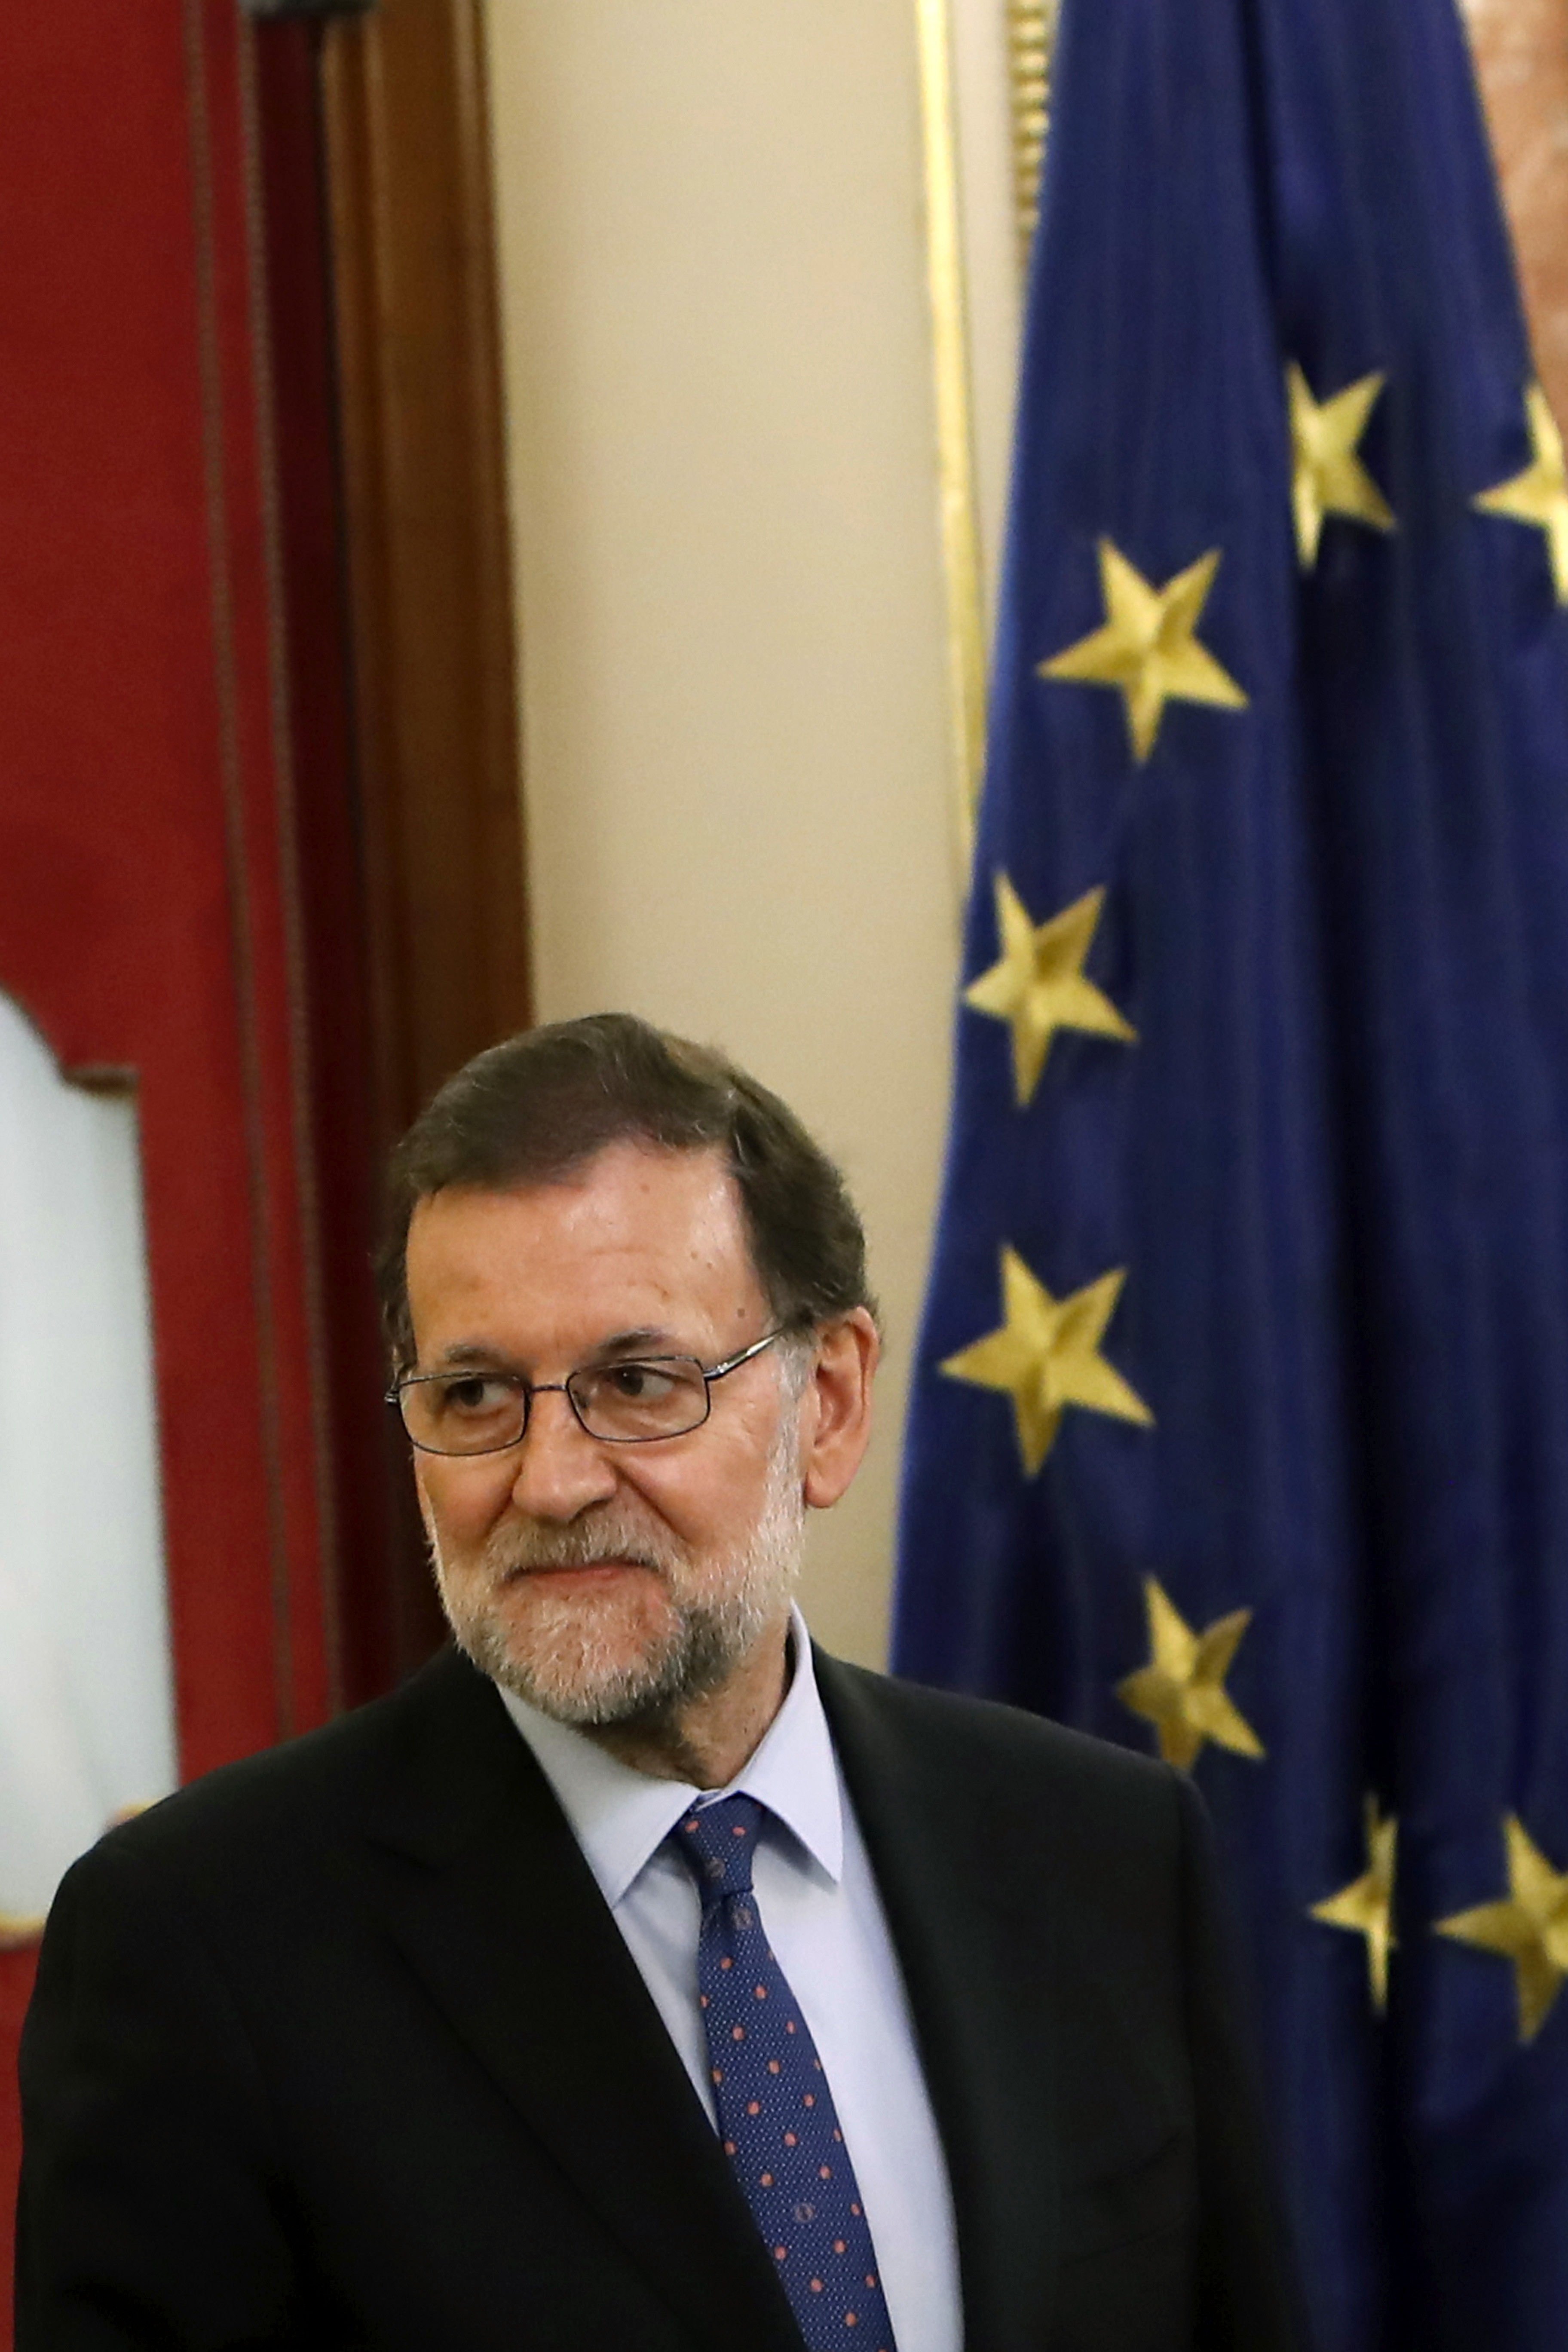 La reacció del Govern espanyol: veu un fracàs l'acte dels alcaldes